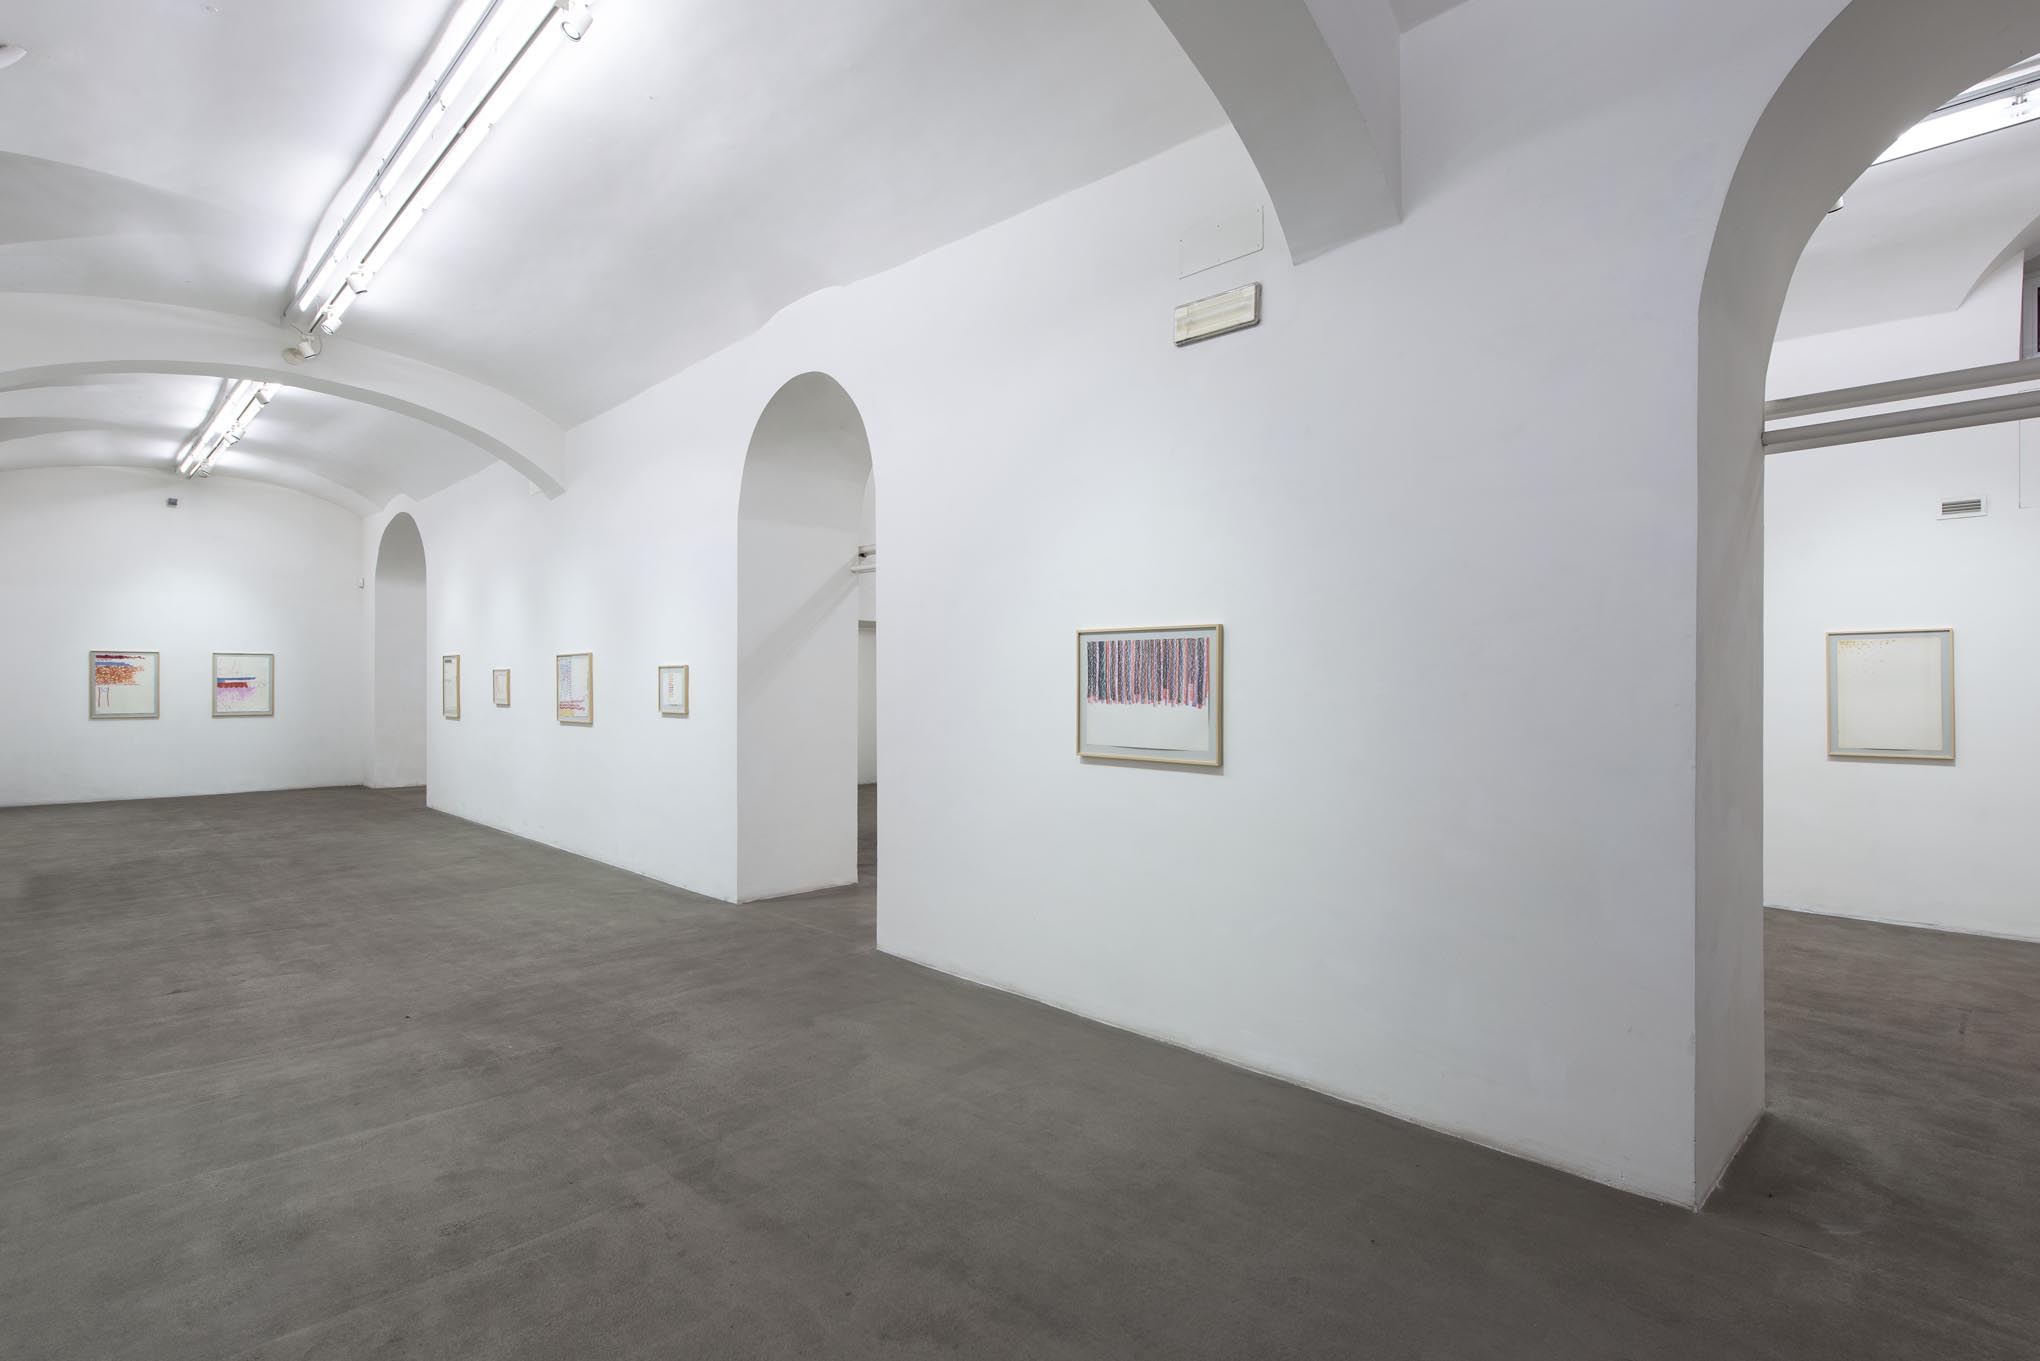 10. Giorgio Griffa: Works on Paper
Installation view, Roma, 2014, foto Giorgio Benni